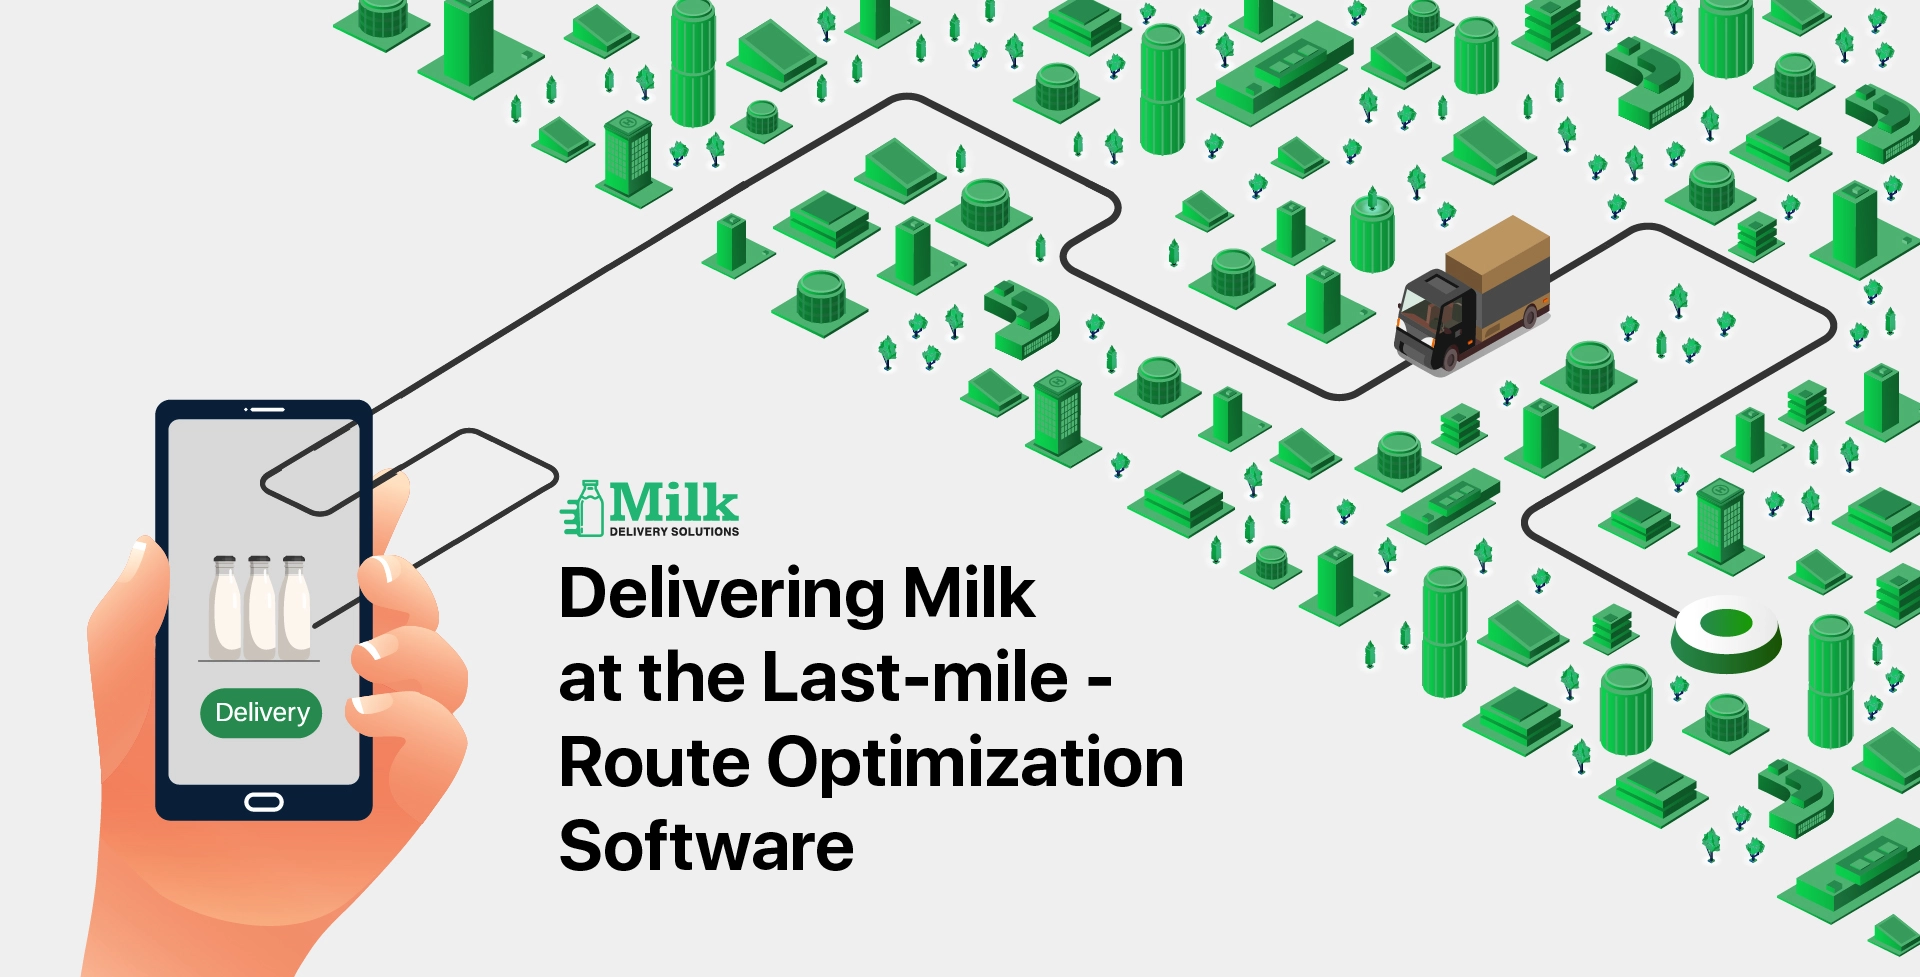 ravi garg, mds, last-mile delivery, deliveries, milk business, milk delivery business 